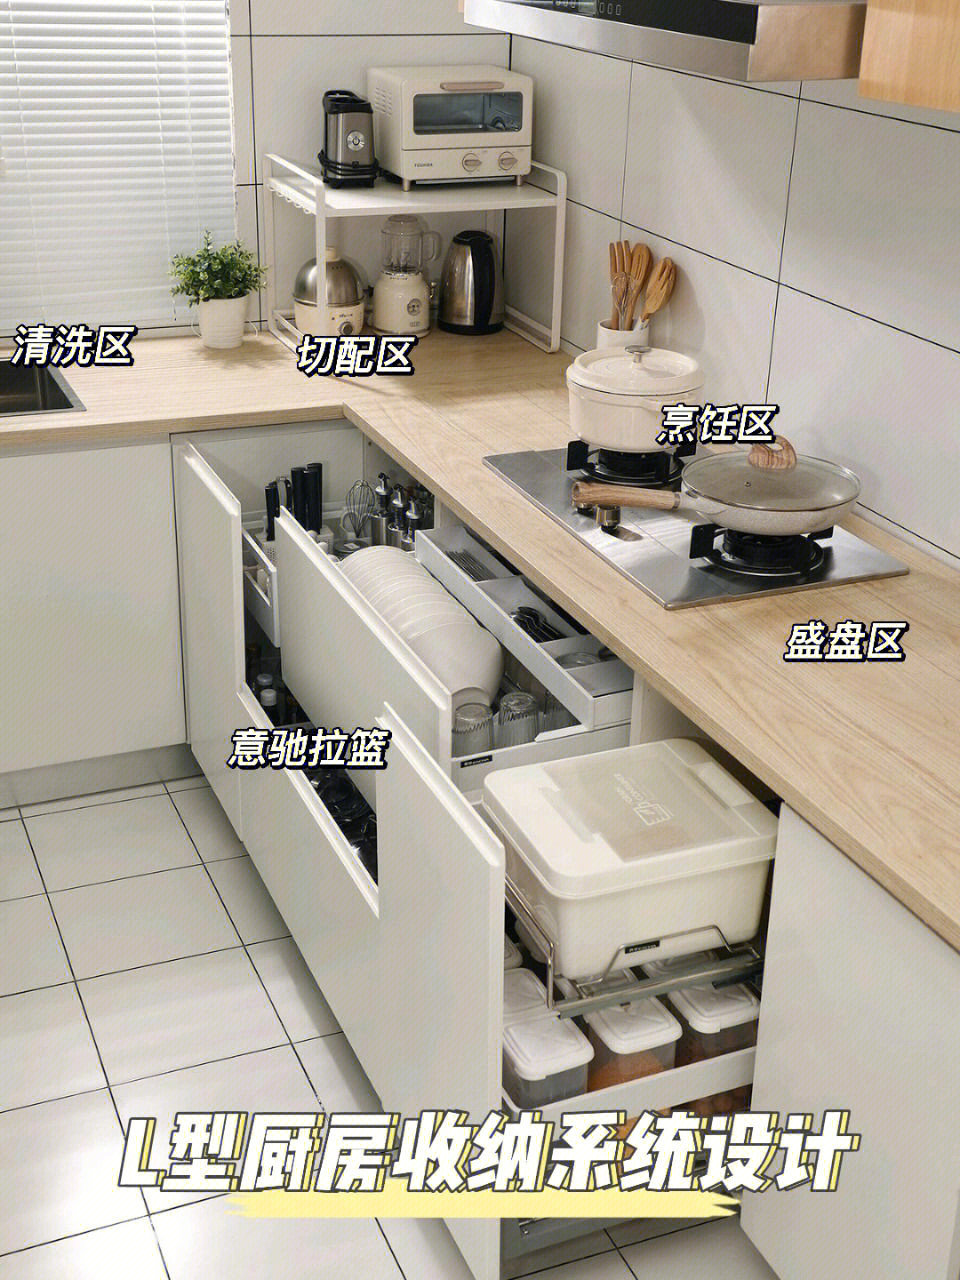 今日份分享来自@晨晨一直想拥有一个日本收纳风格的厨房,简约,整齐